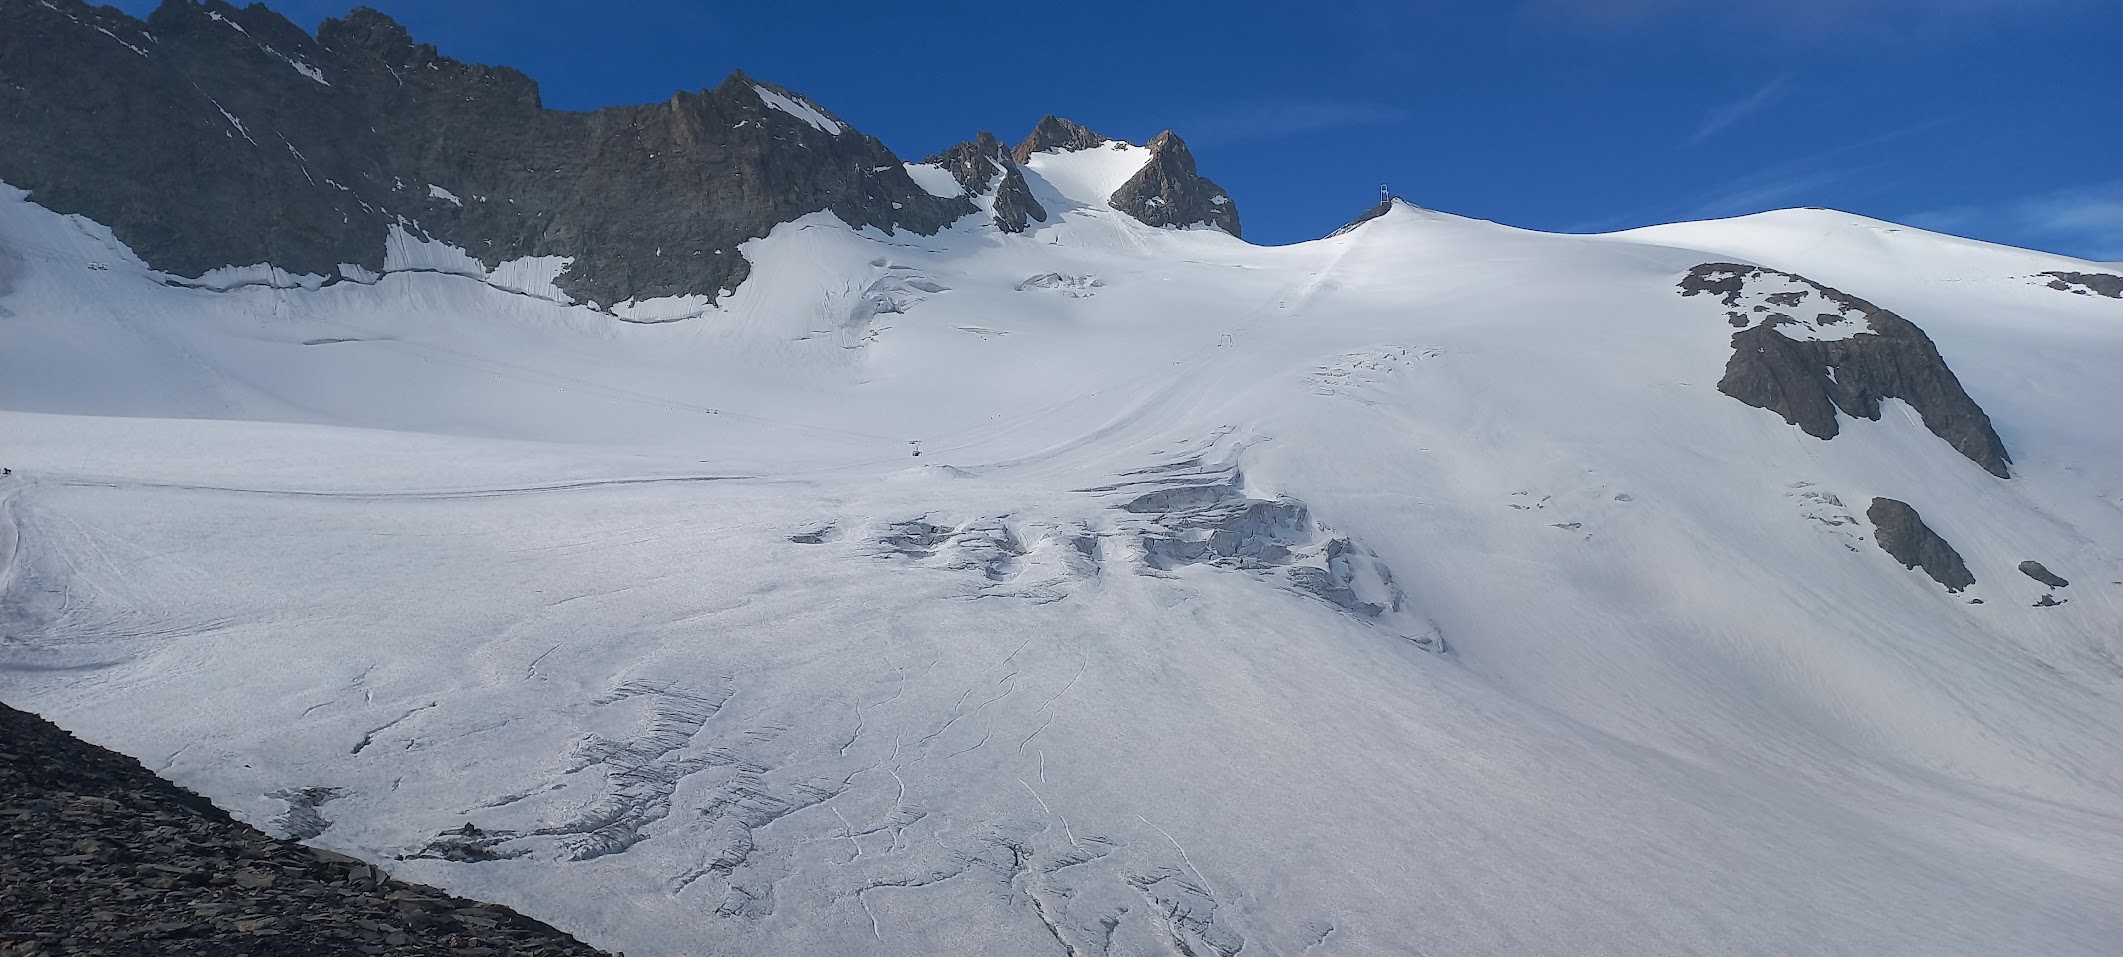 Formation corde et manip’ : évolution sur glacier, épisode 2 !